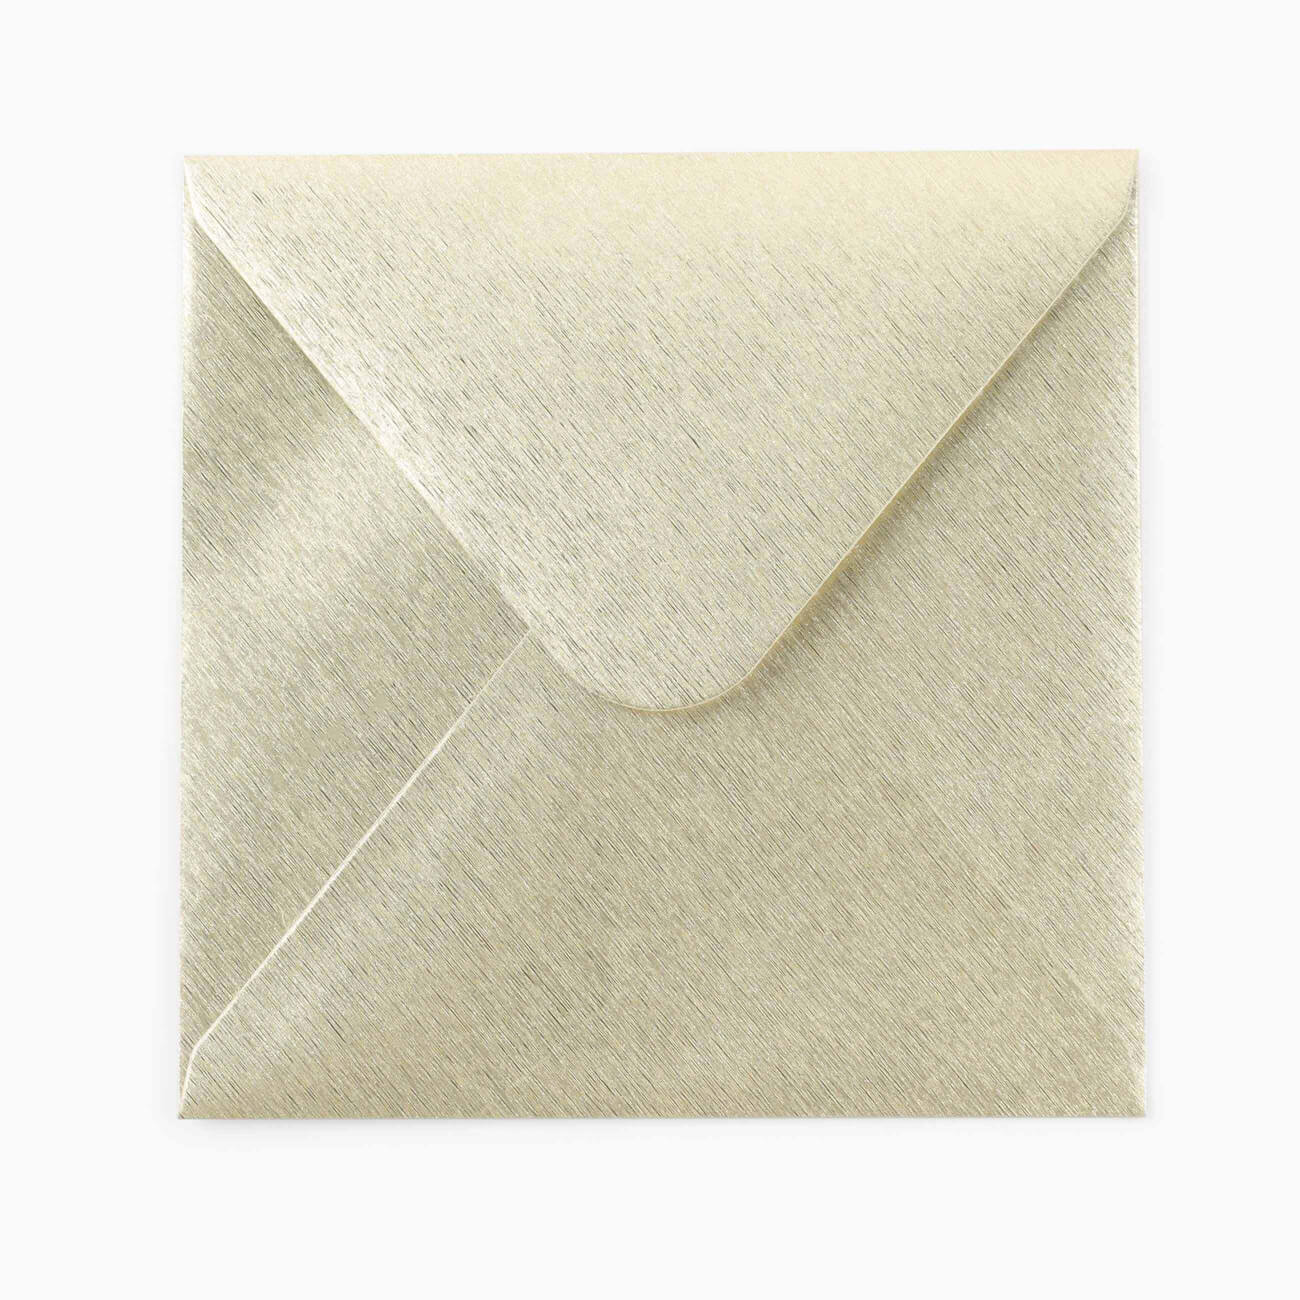 Конверт подарочный, 15 см, бумага, квадратный, золотистый, Congrats конверт для запекания